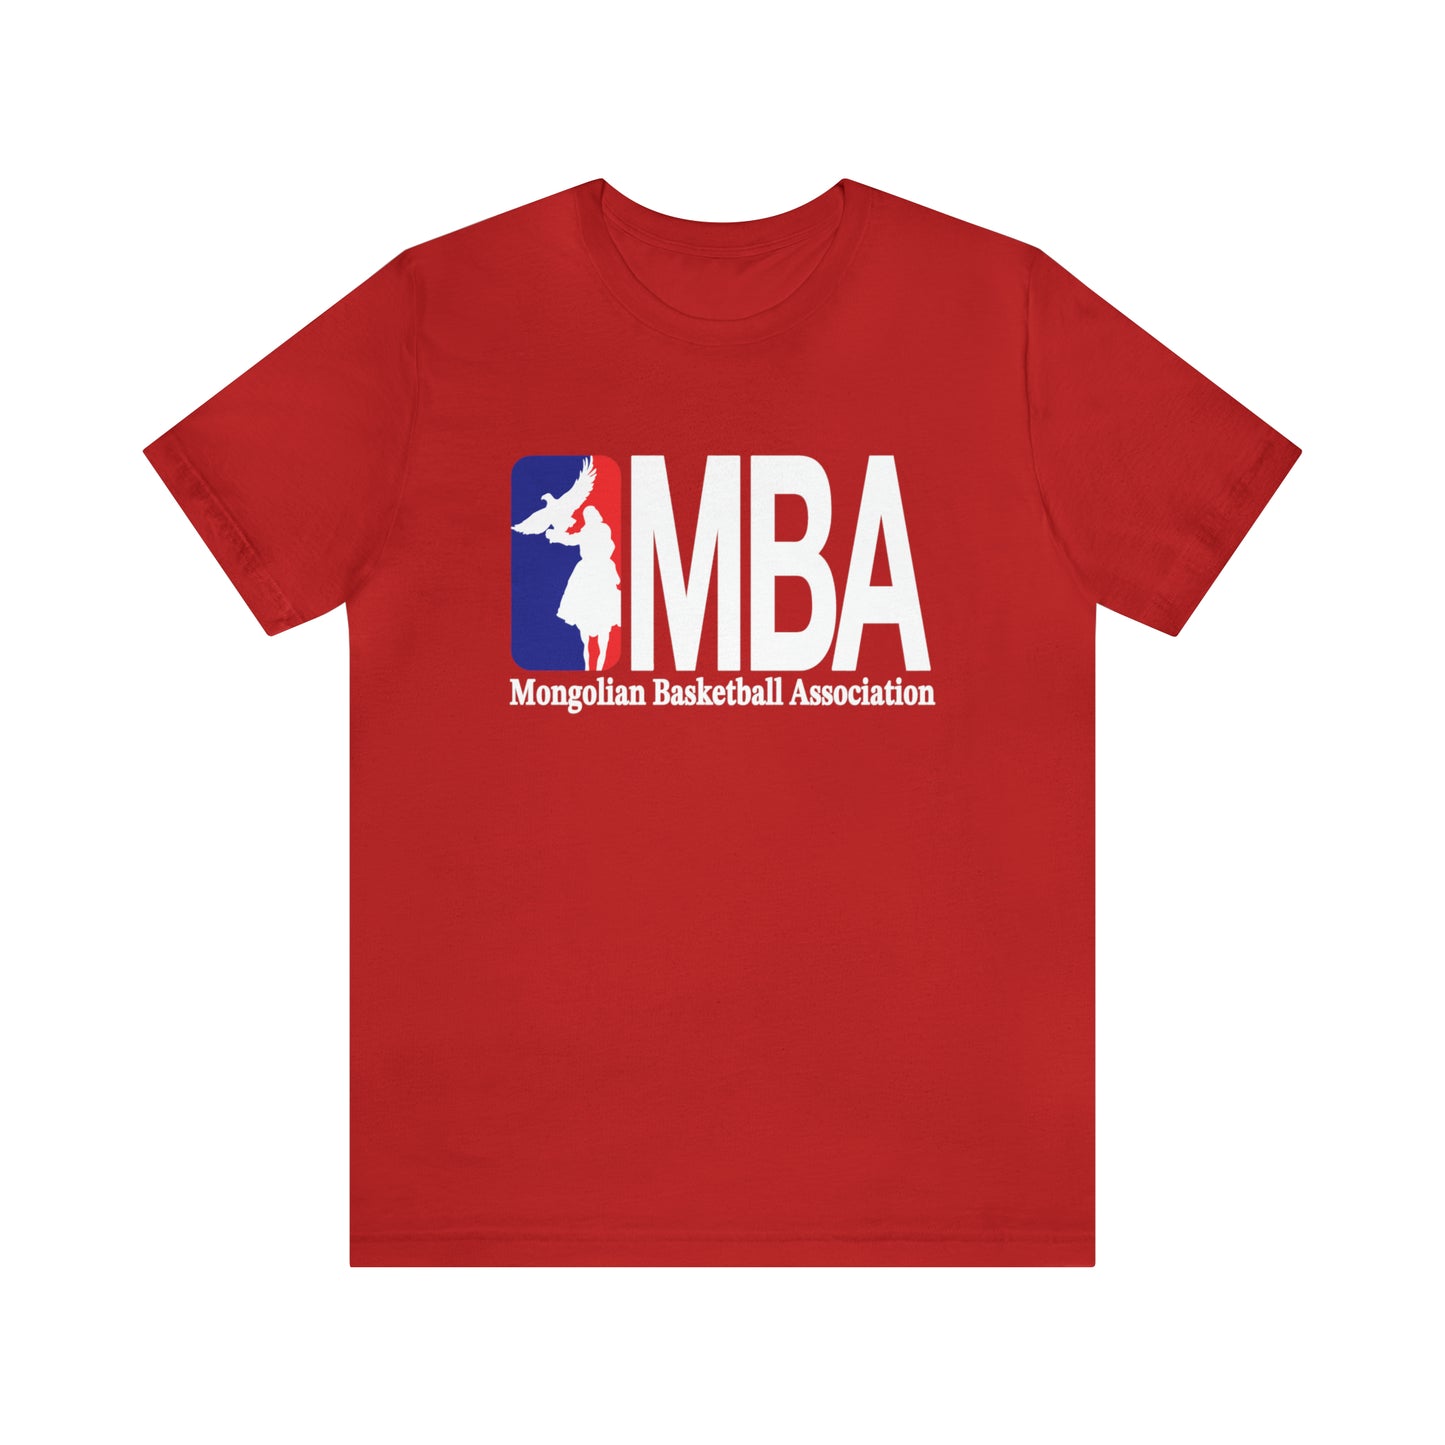 Mongolian Basketball Association t-shirt